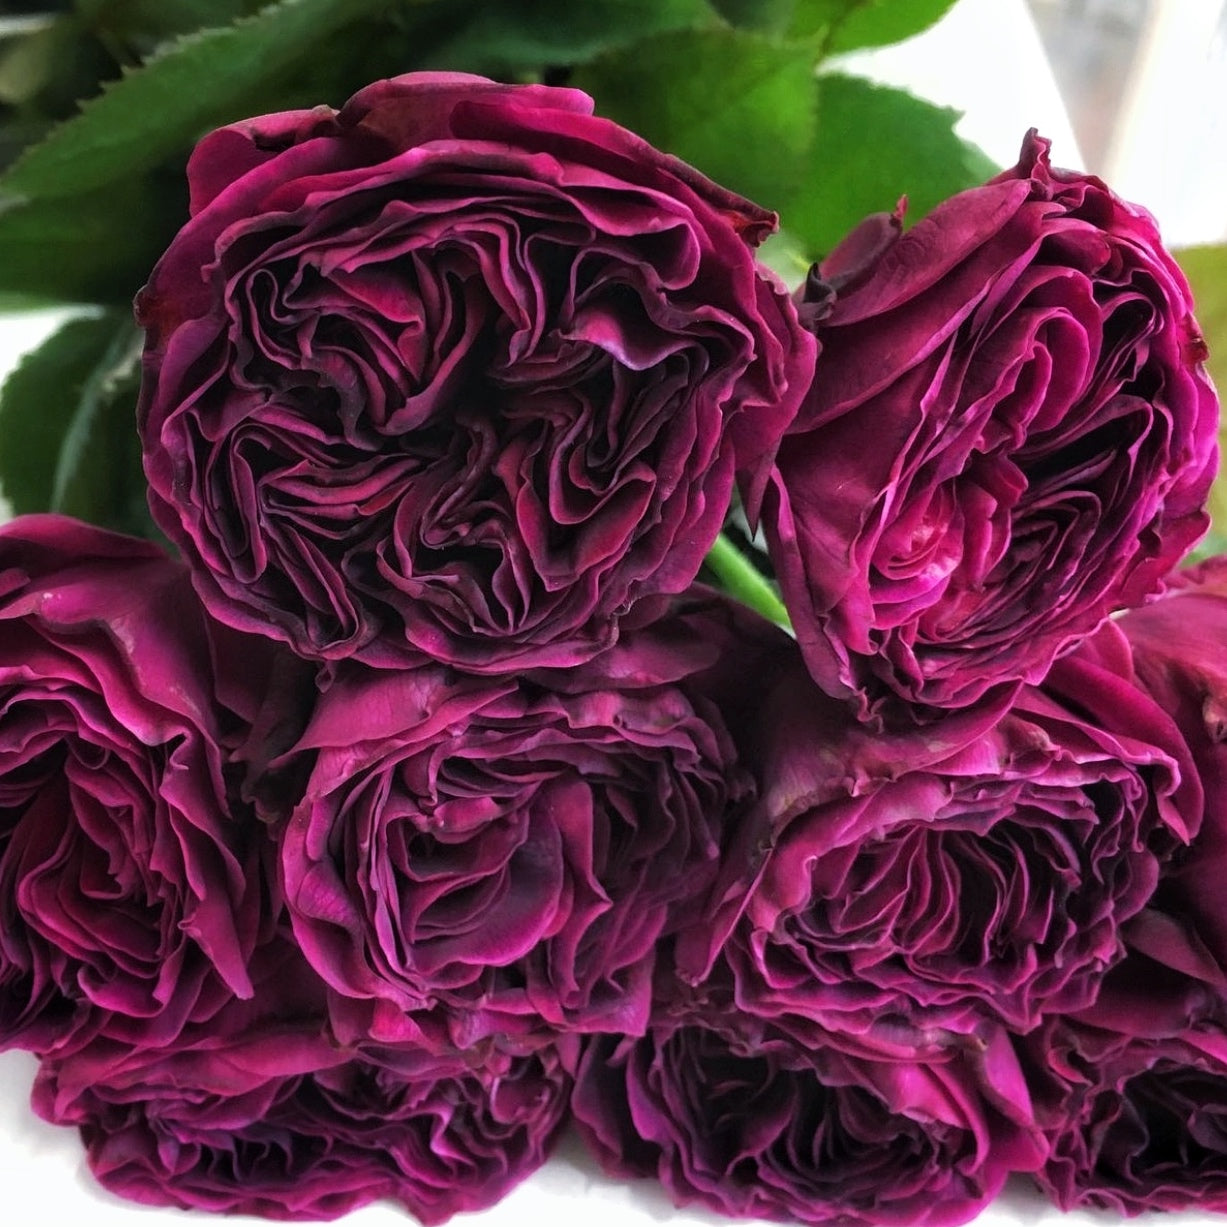 Rose Plant ‘Hilaku’ | 绽, 咲, 蓝莓戒指  ひらく